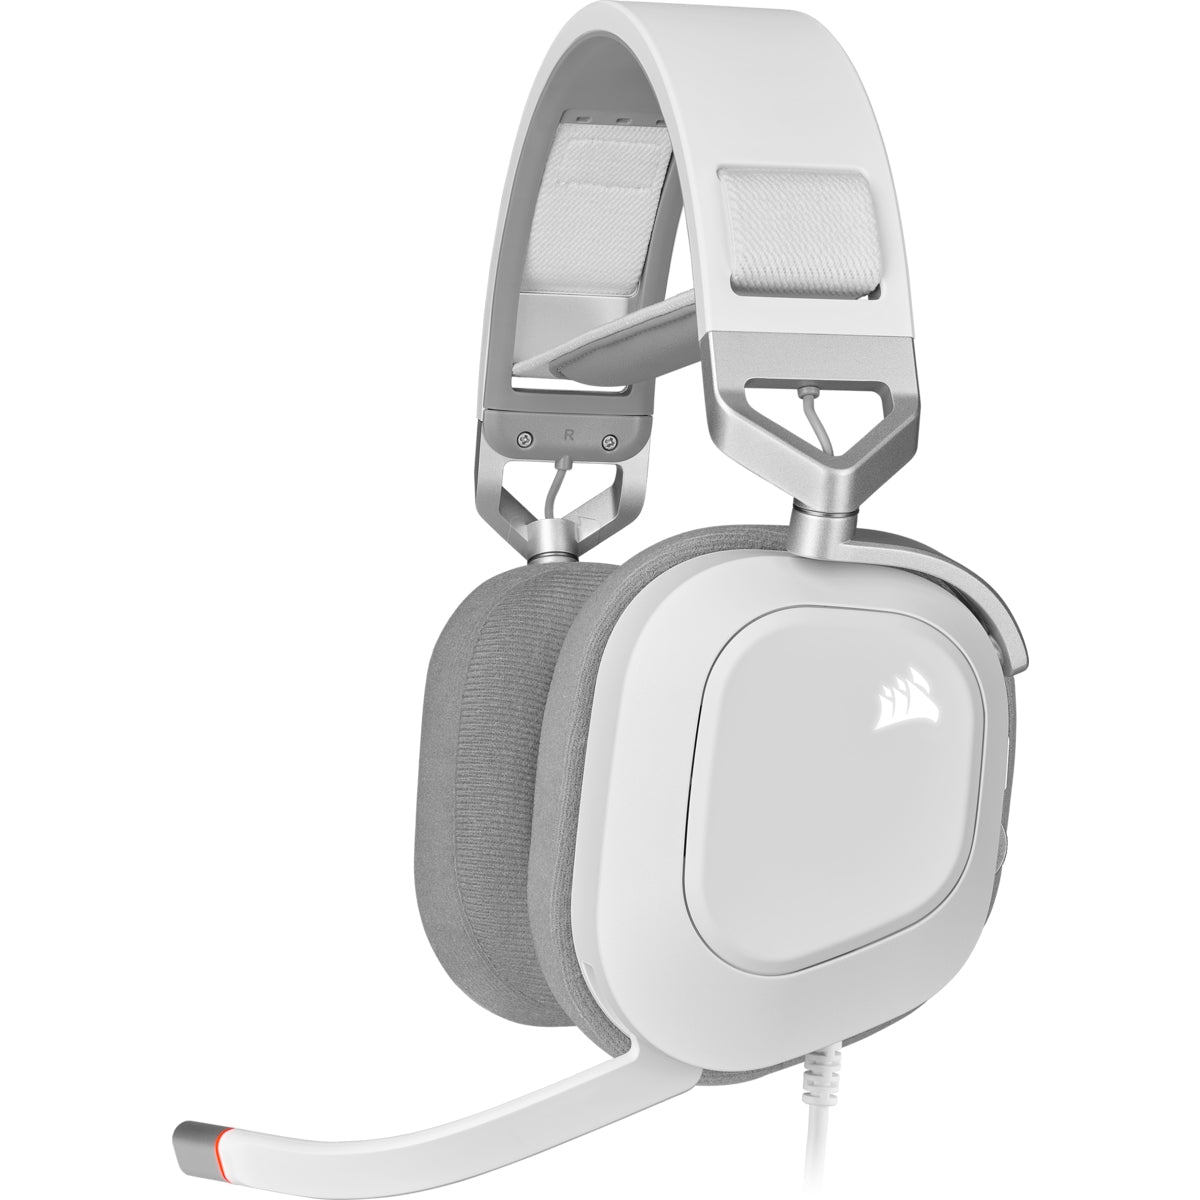 Headset Corsair Hs80 Rgb Usb Wired White Ca-9011238-Na